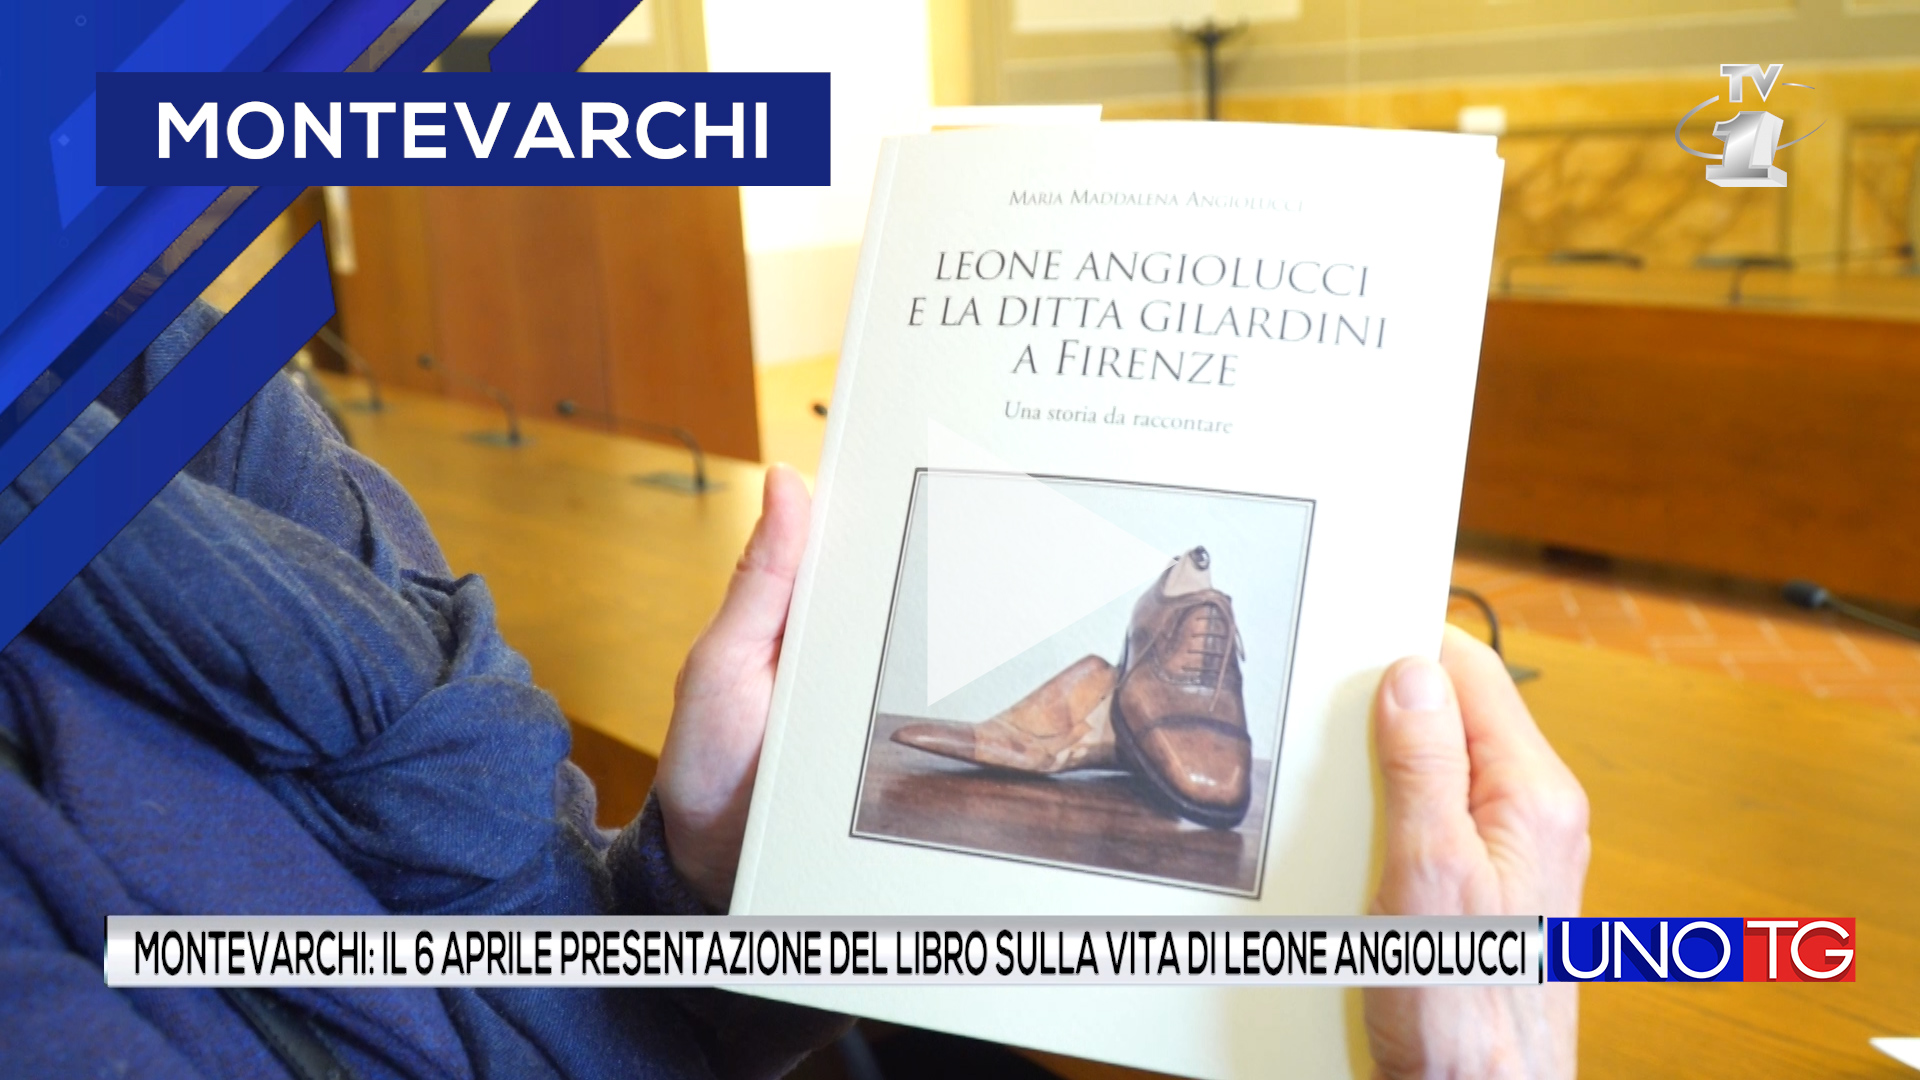 Montevarchi: il 6 aprile presentazione del libro sulla vita di Leone Angiolucci